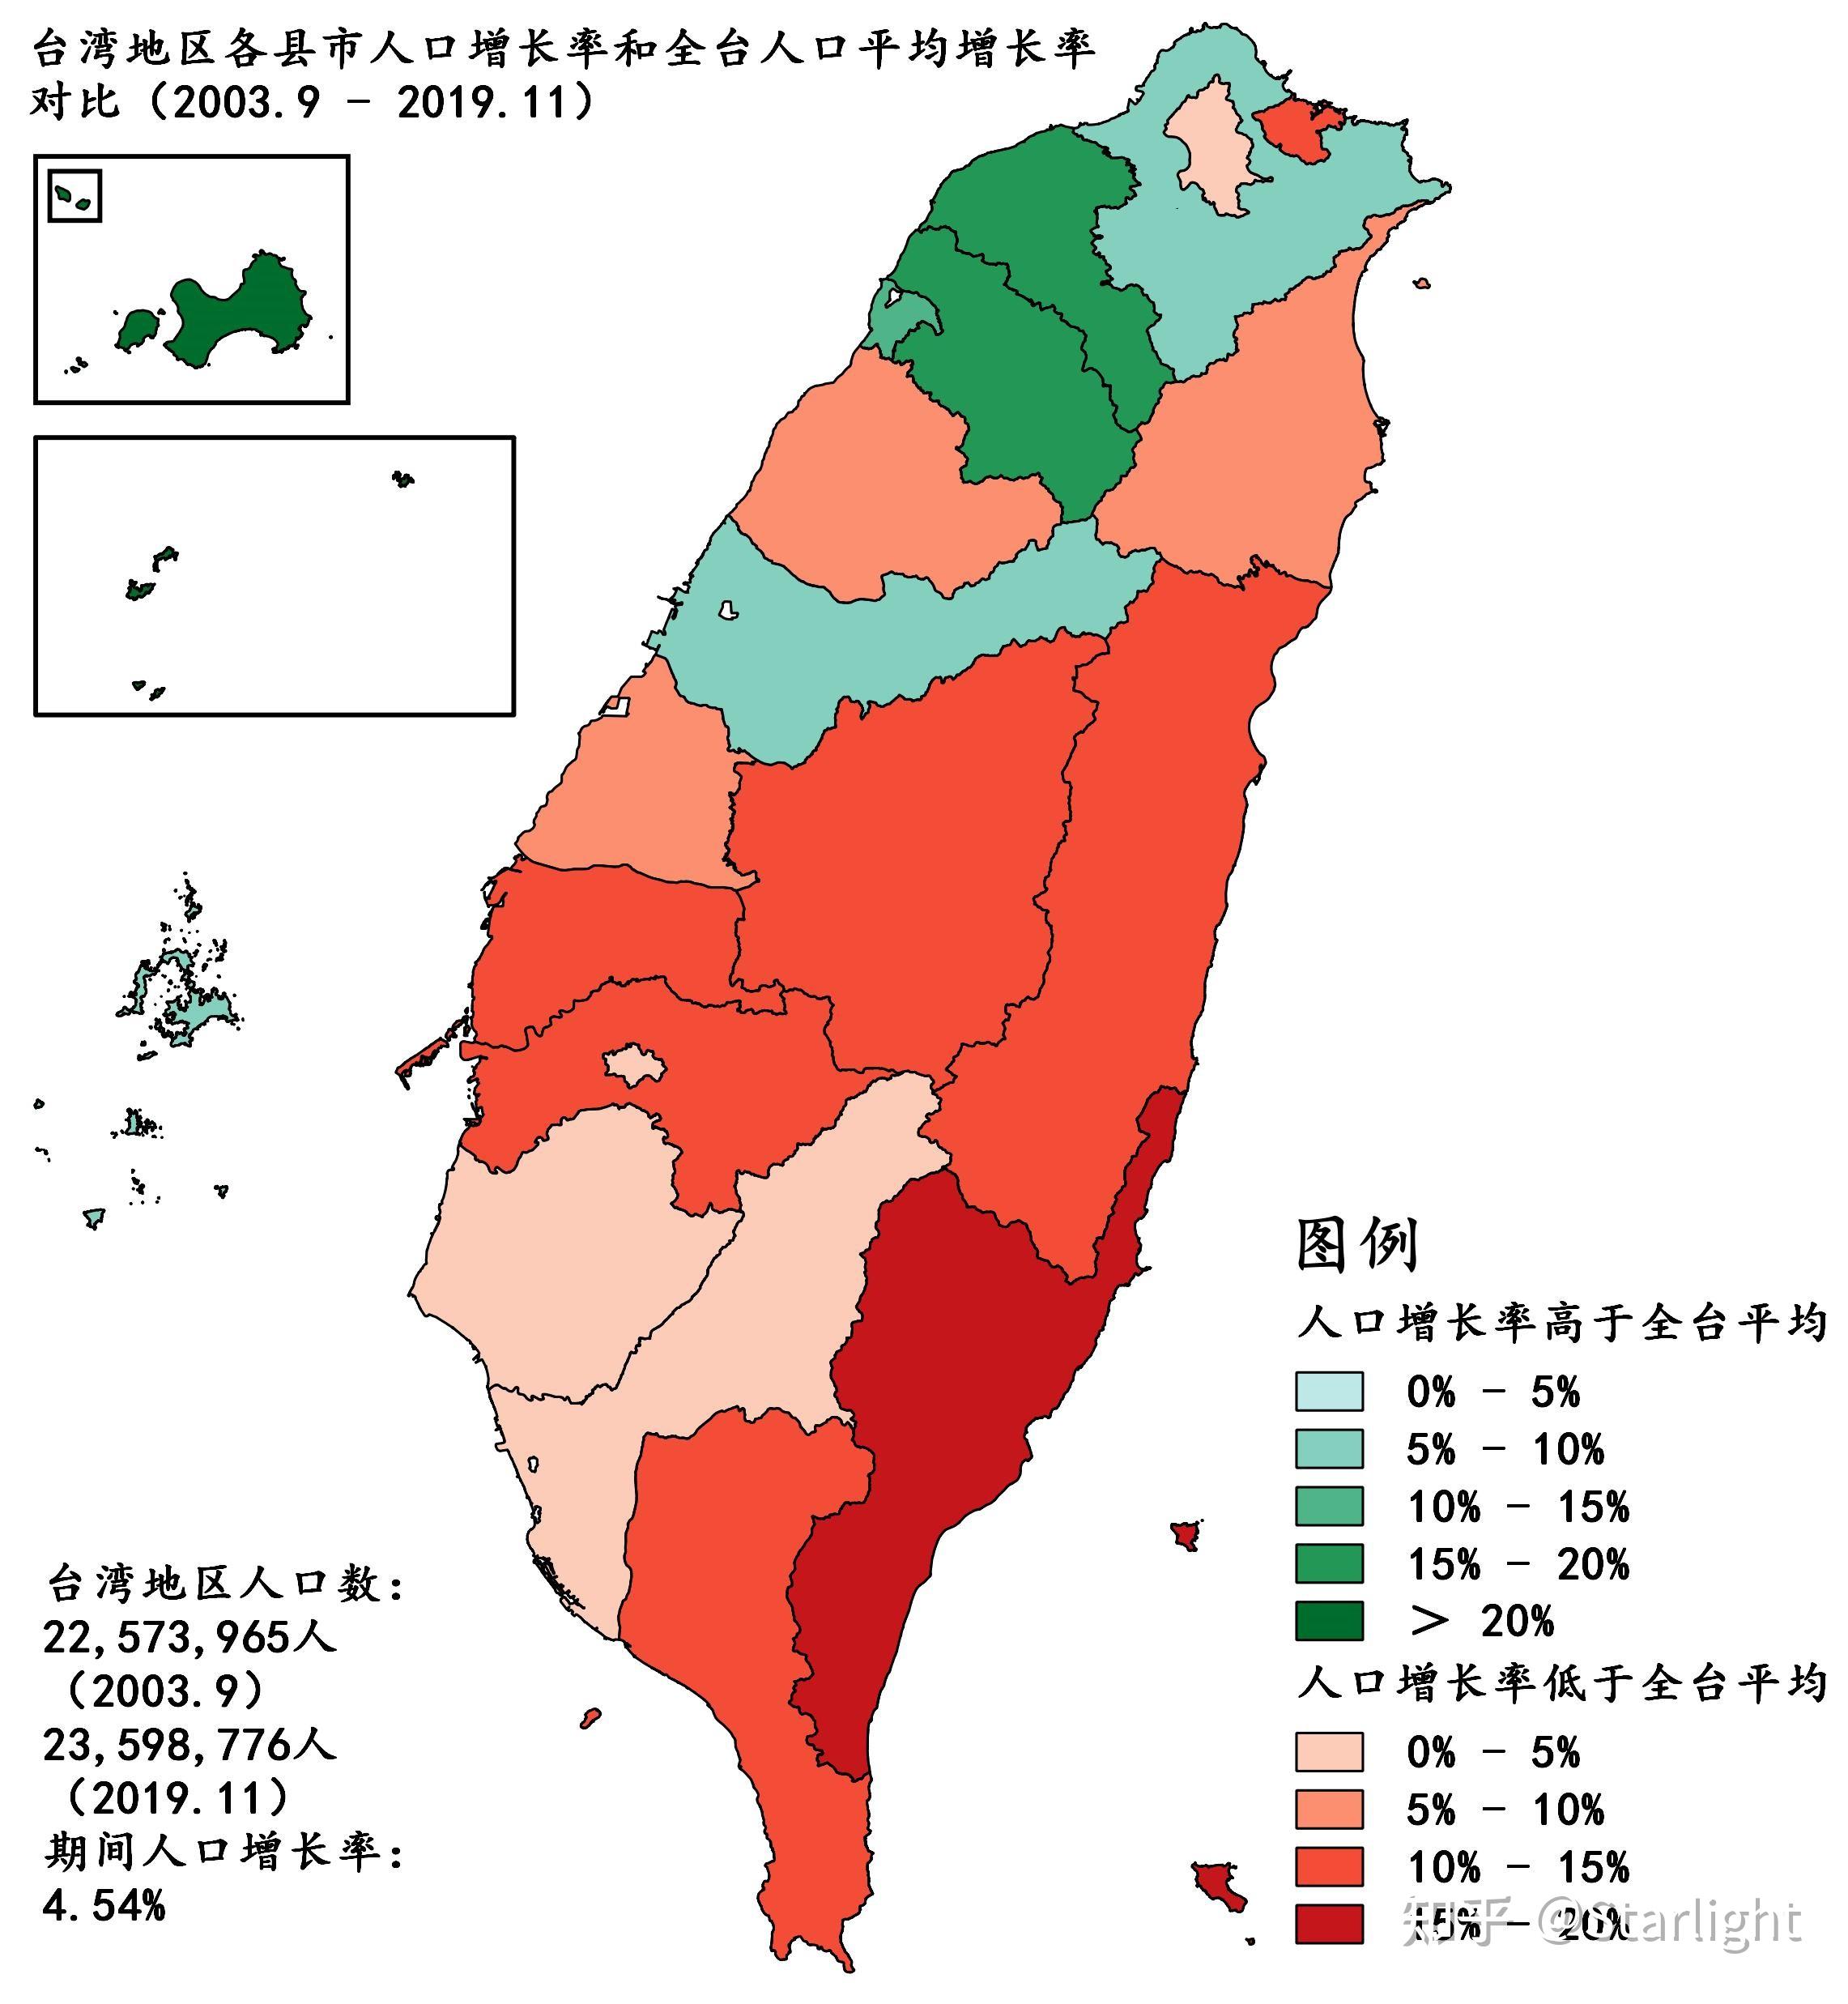 第二节,台湾地区人口增长率分析